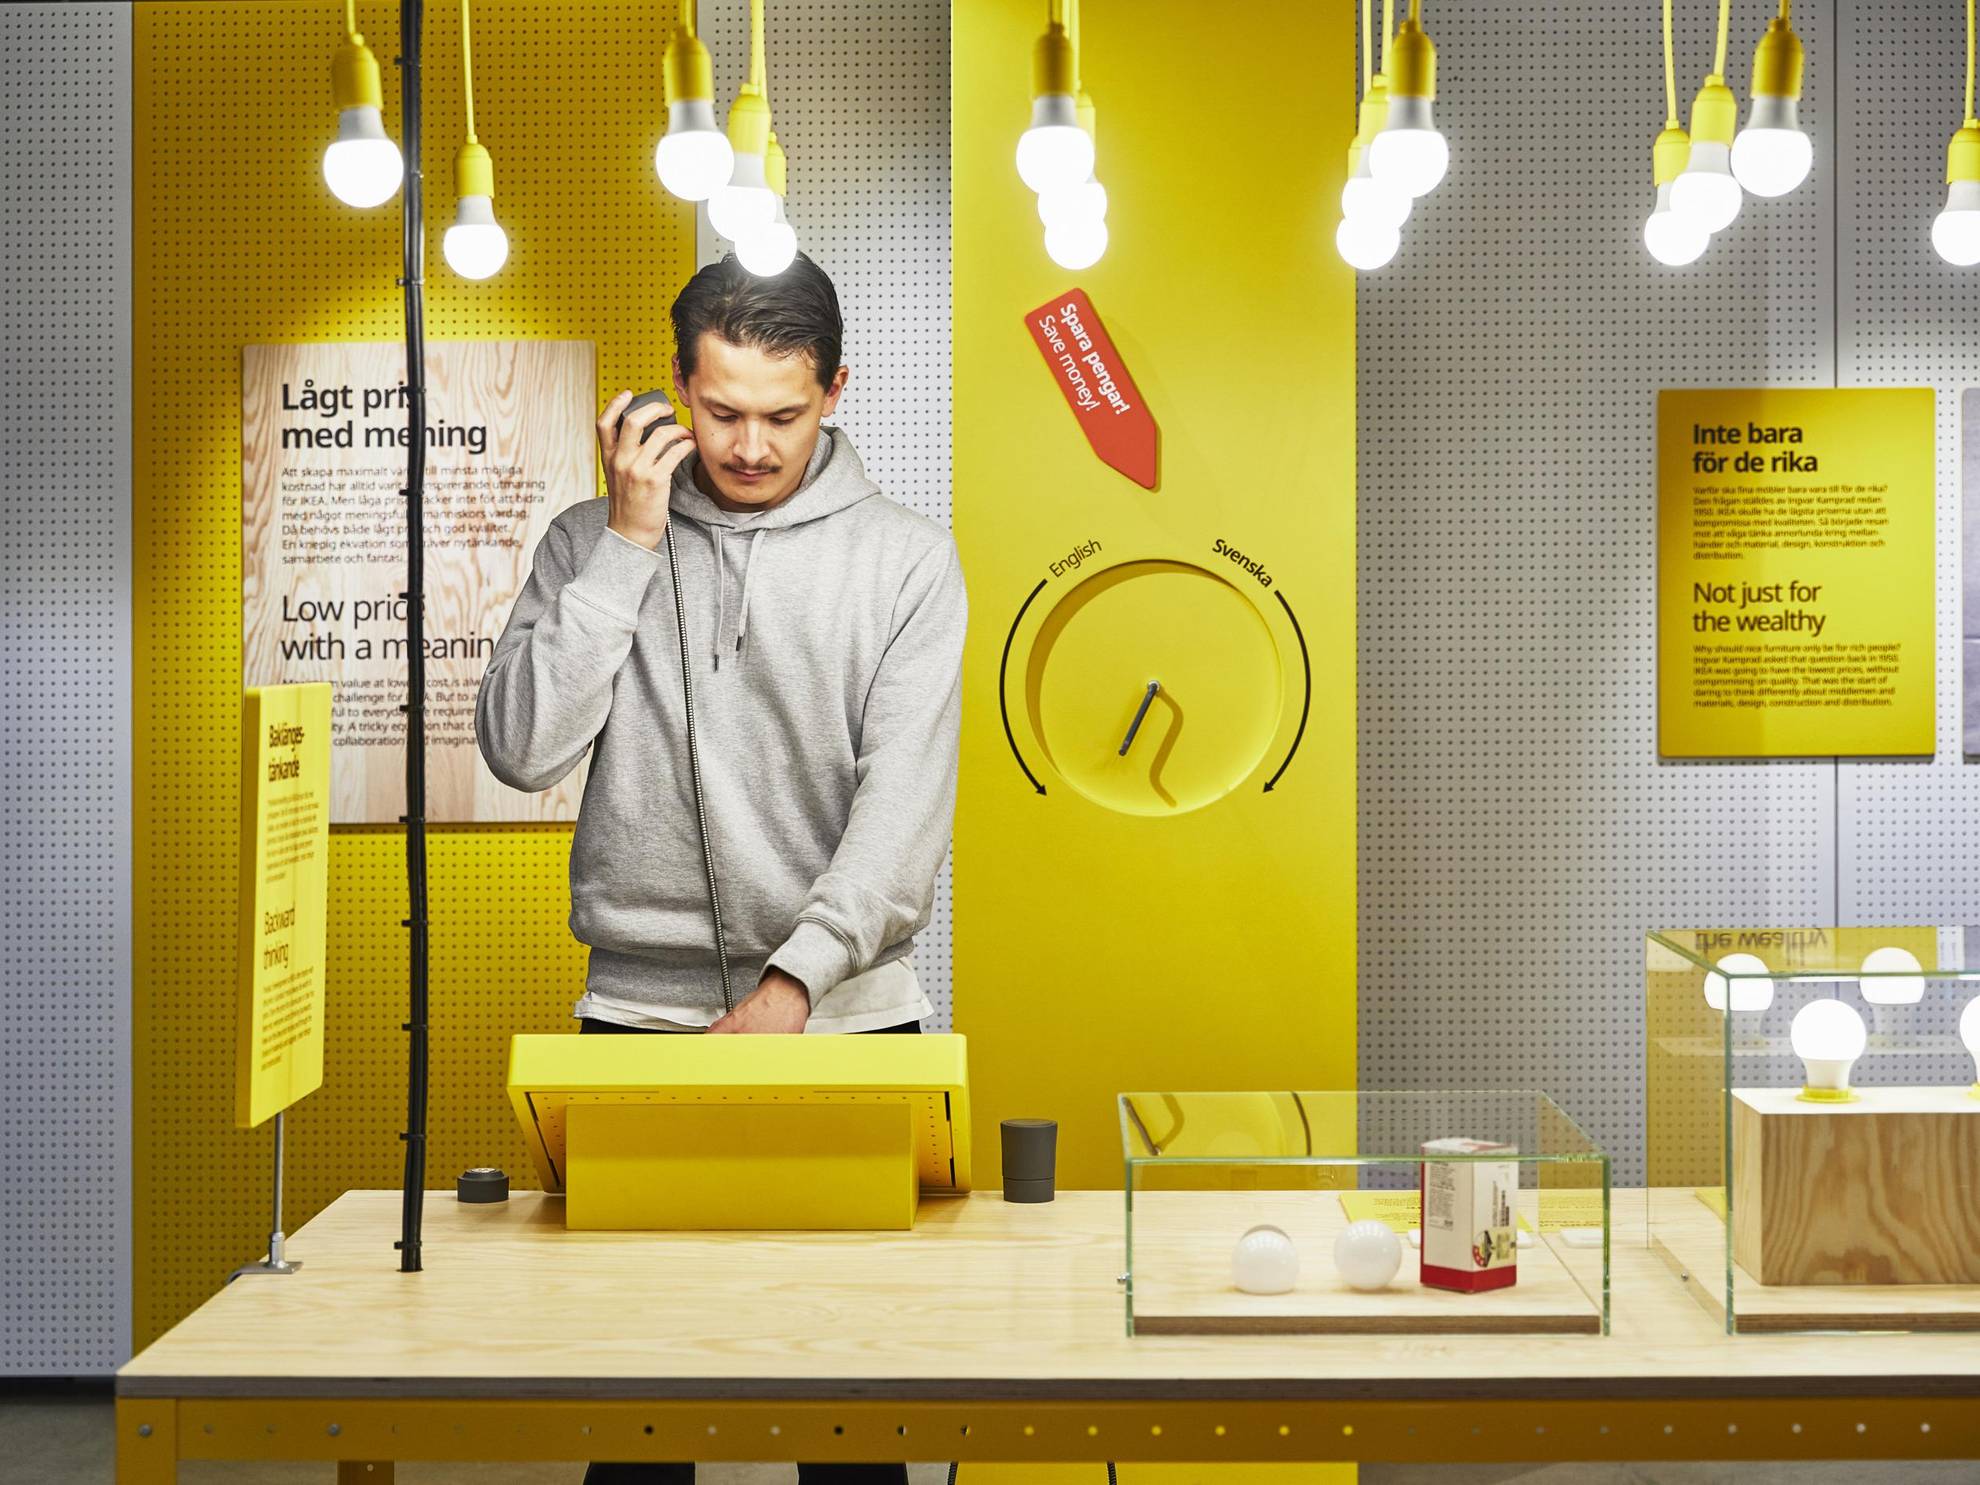 Ein Mann steht an einem Tisch und betrachtet ein gelbes Display in einer der Ausstellungen von Ikea. Von der Decke hängen Glühbirnen und auf dem Tisch Glaskästen mit Glühbirnen drin.